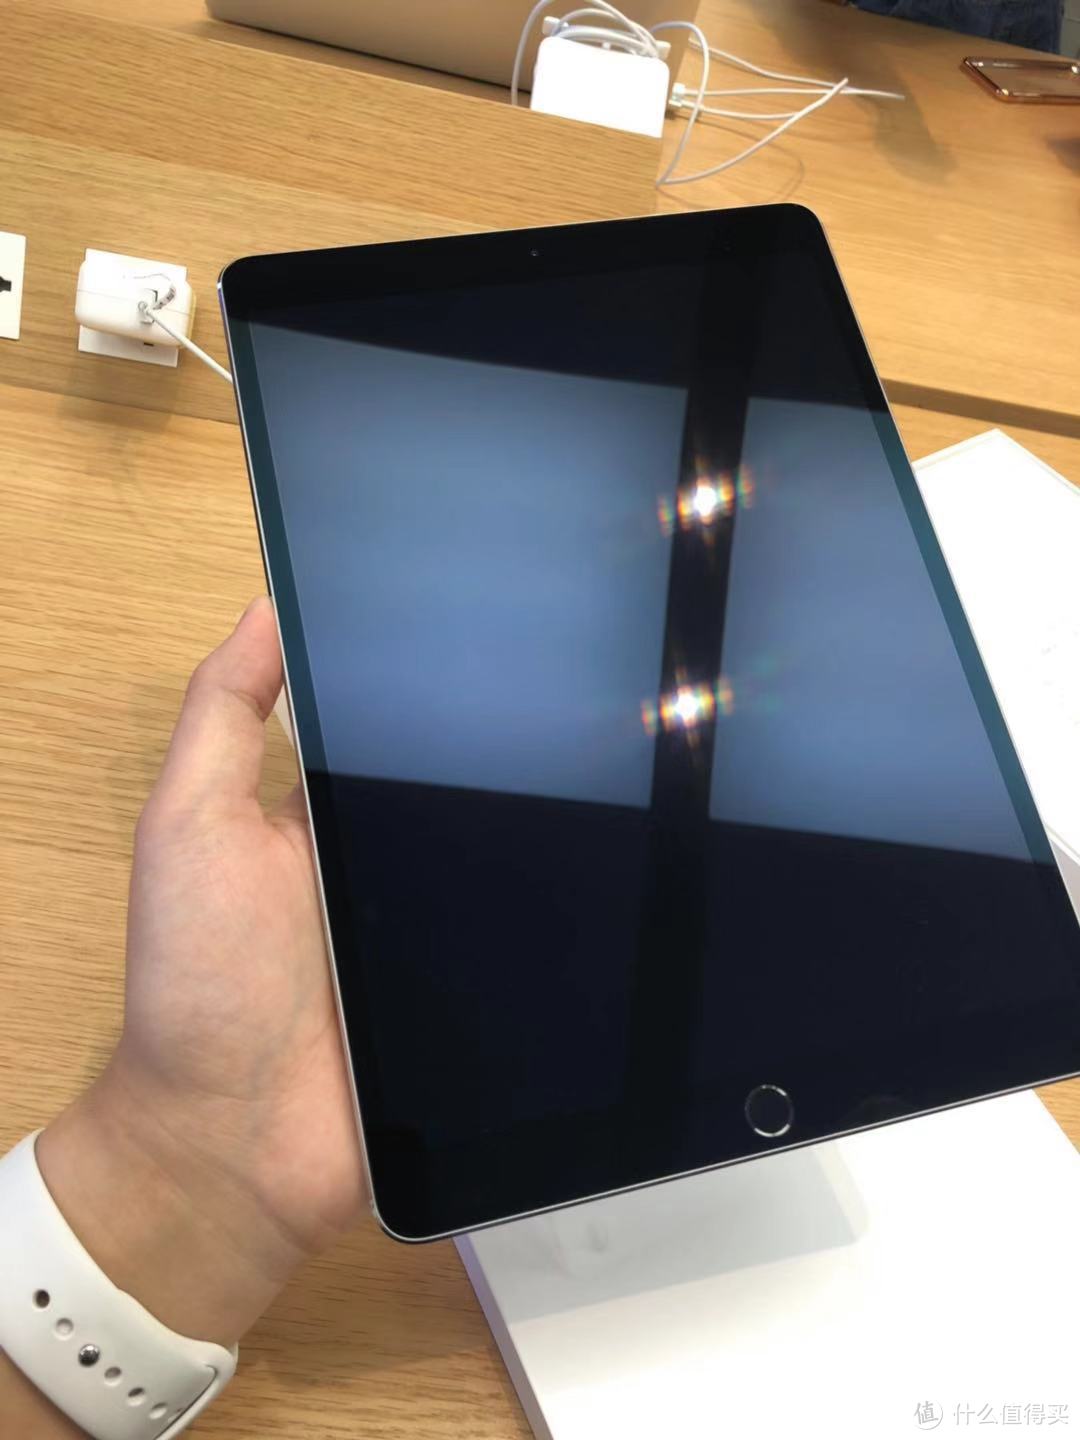 iPad Pro 用户注意了，如果你的设备出现这种情况，可以直接去直营店换新